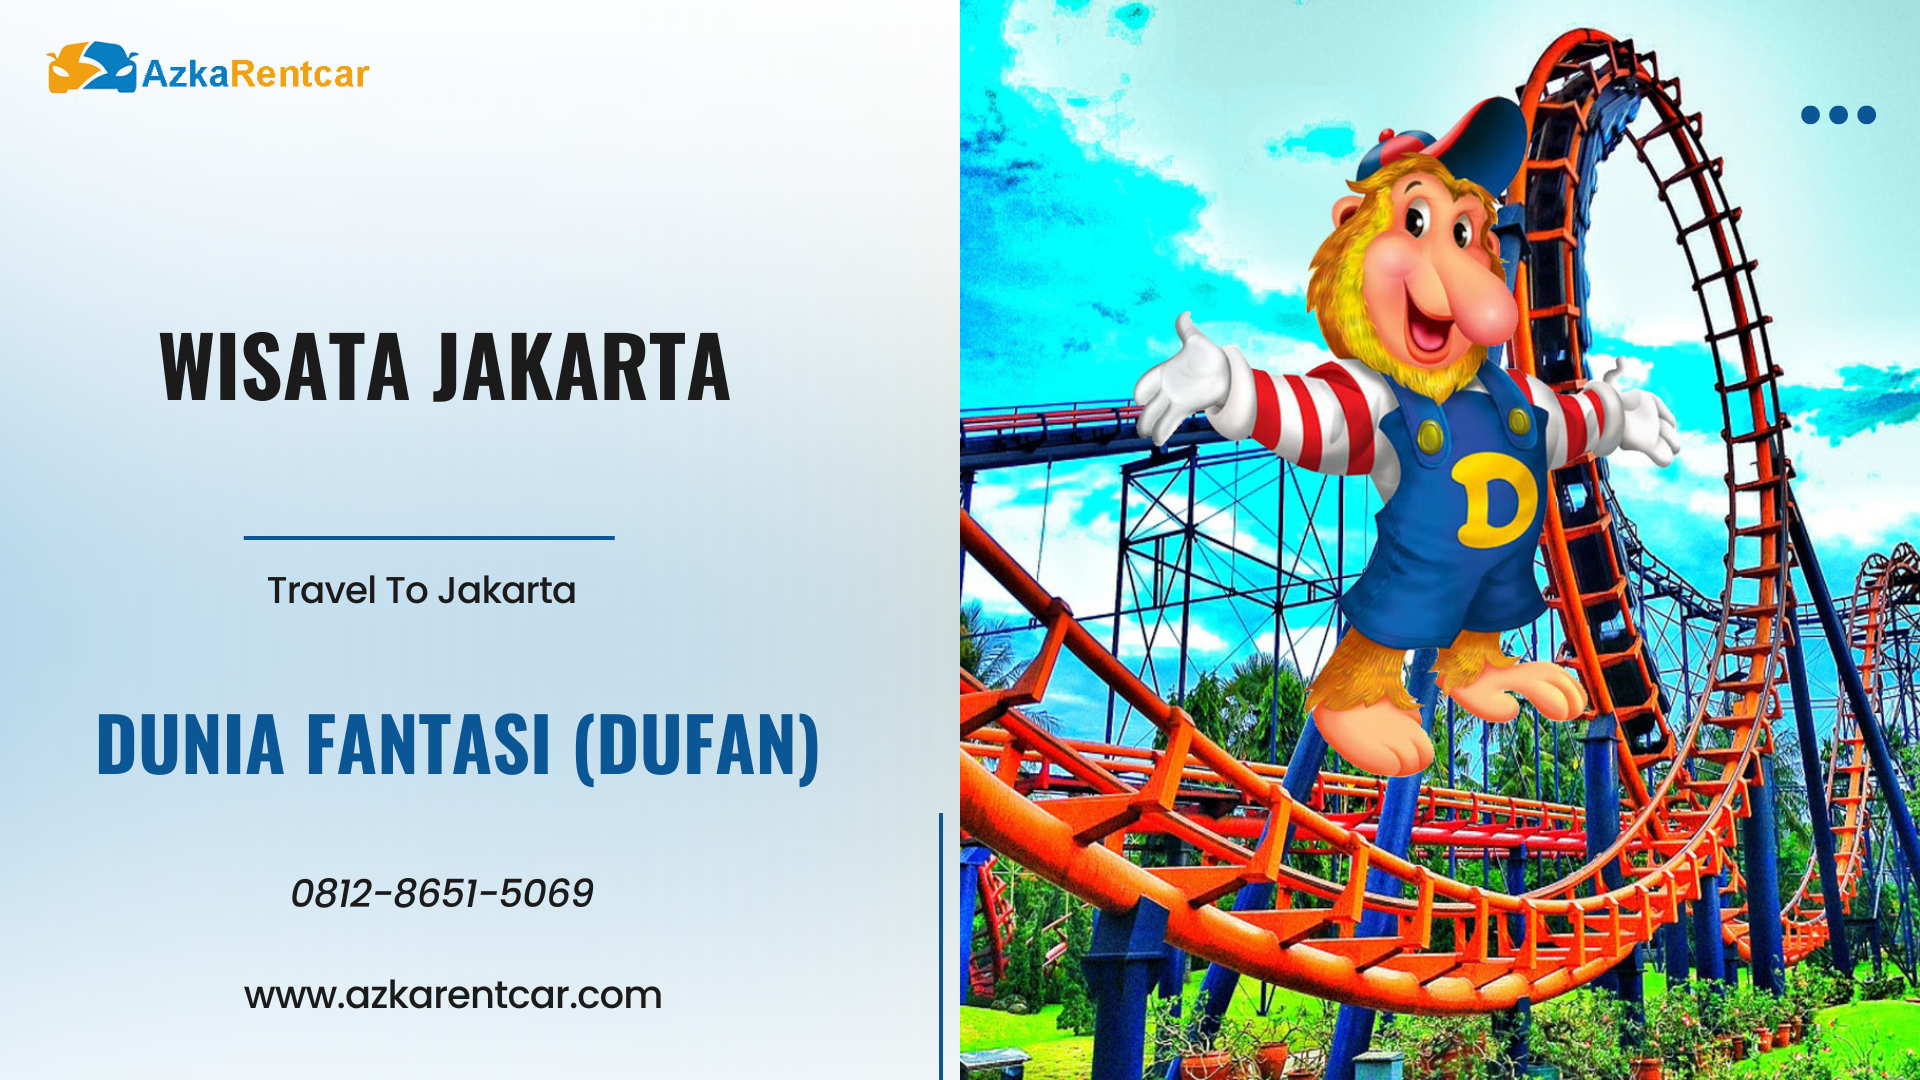 Wisata Jakarta Dunia Fantasi Dufan 1